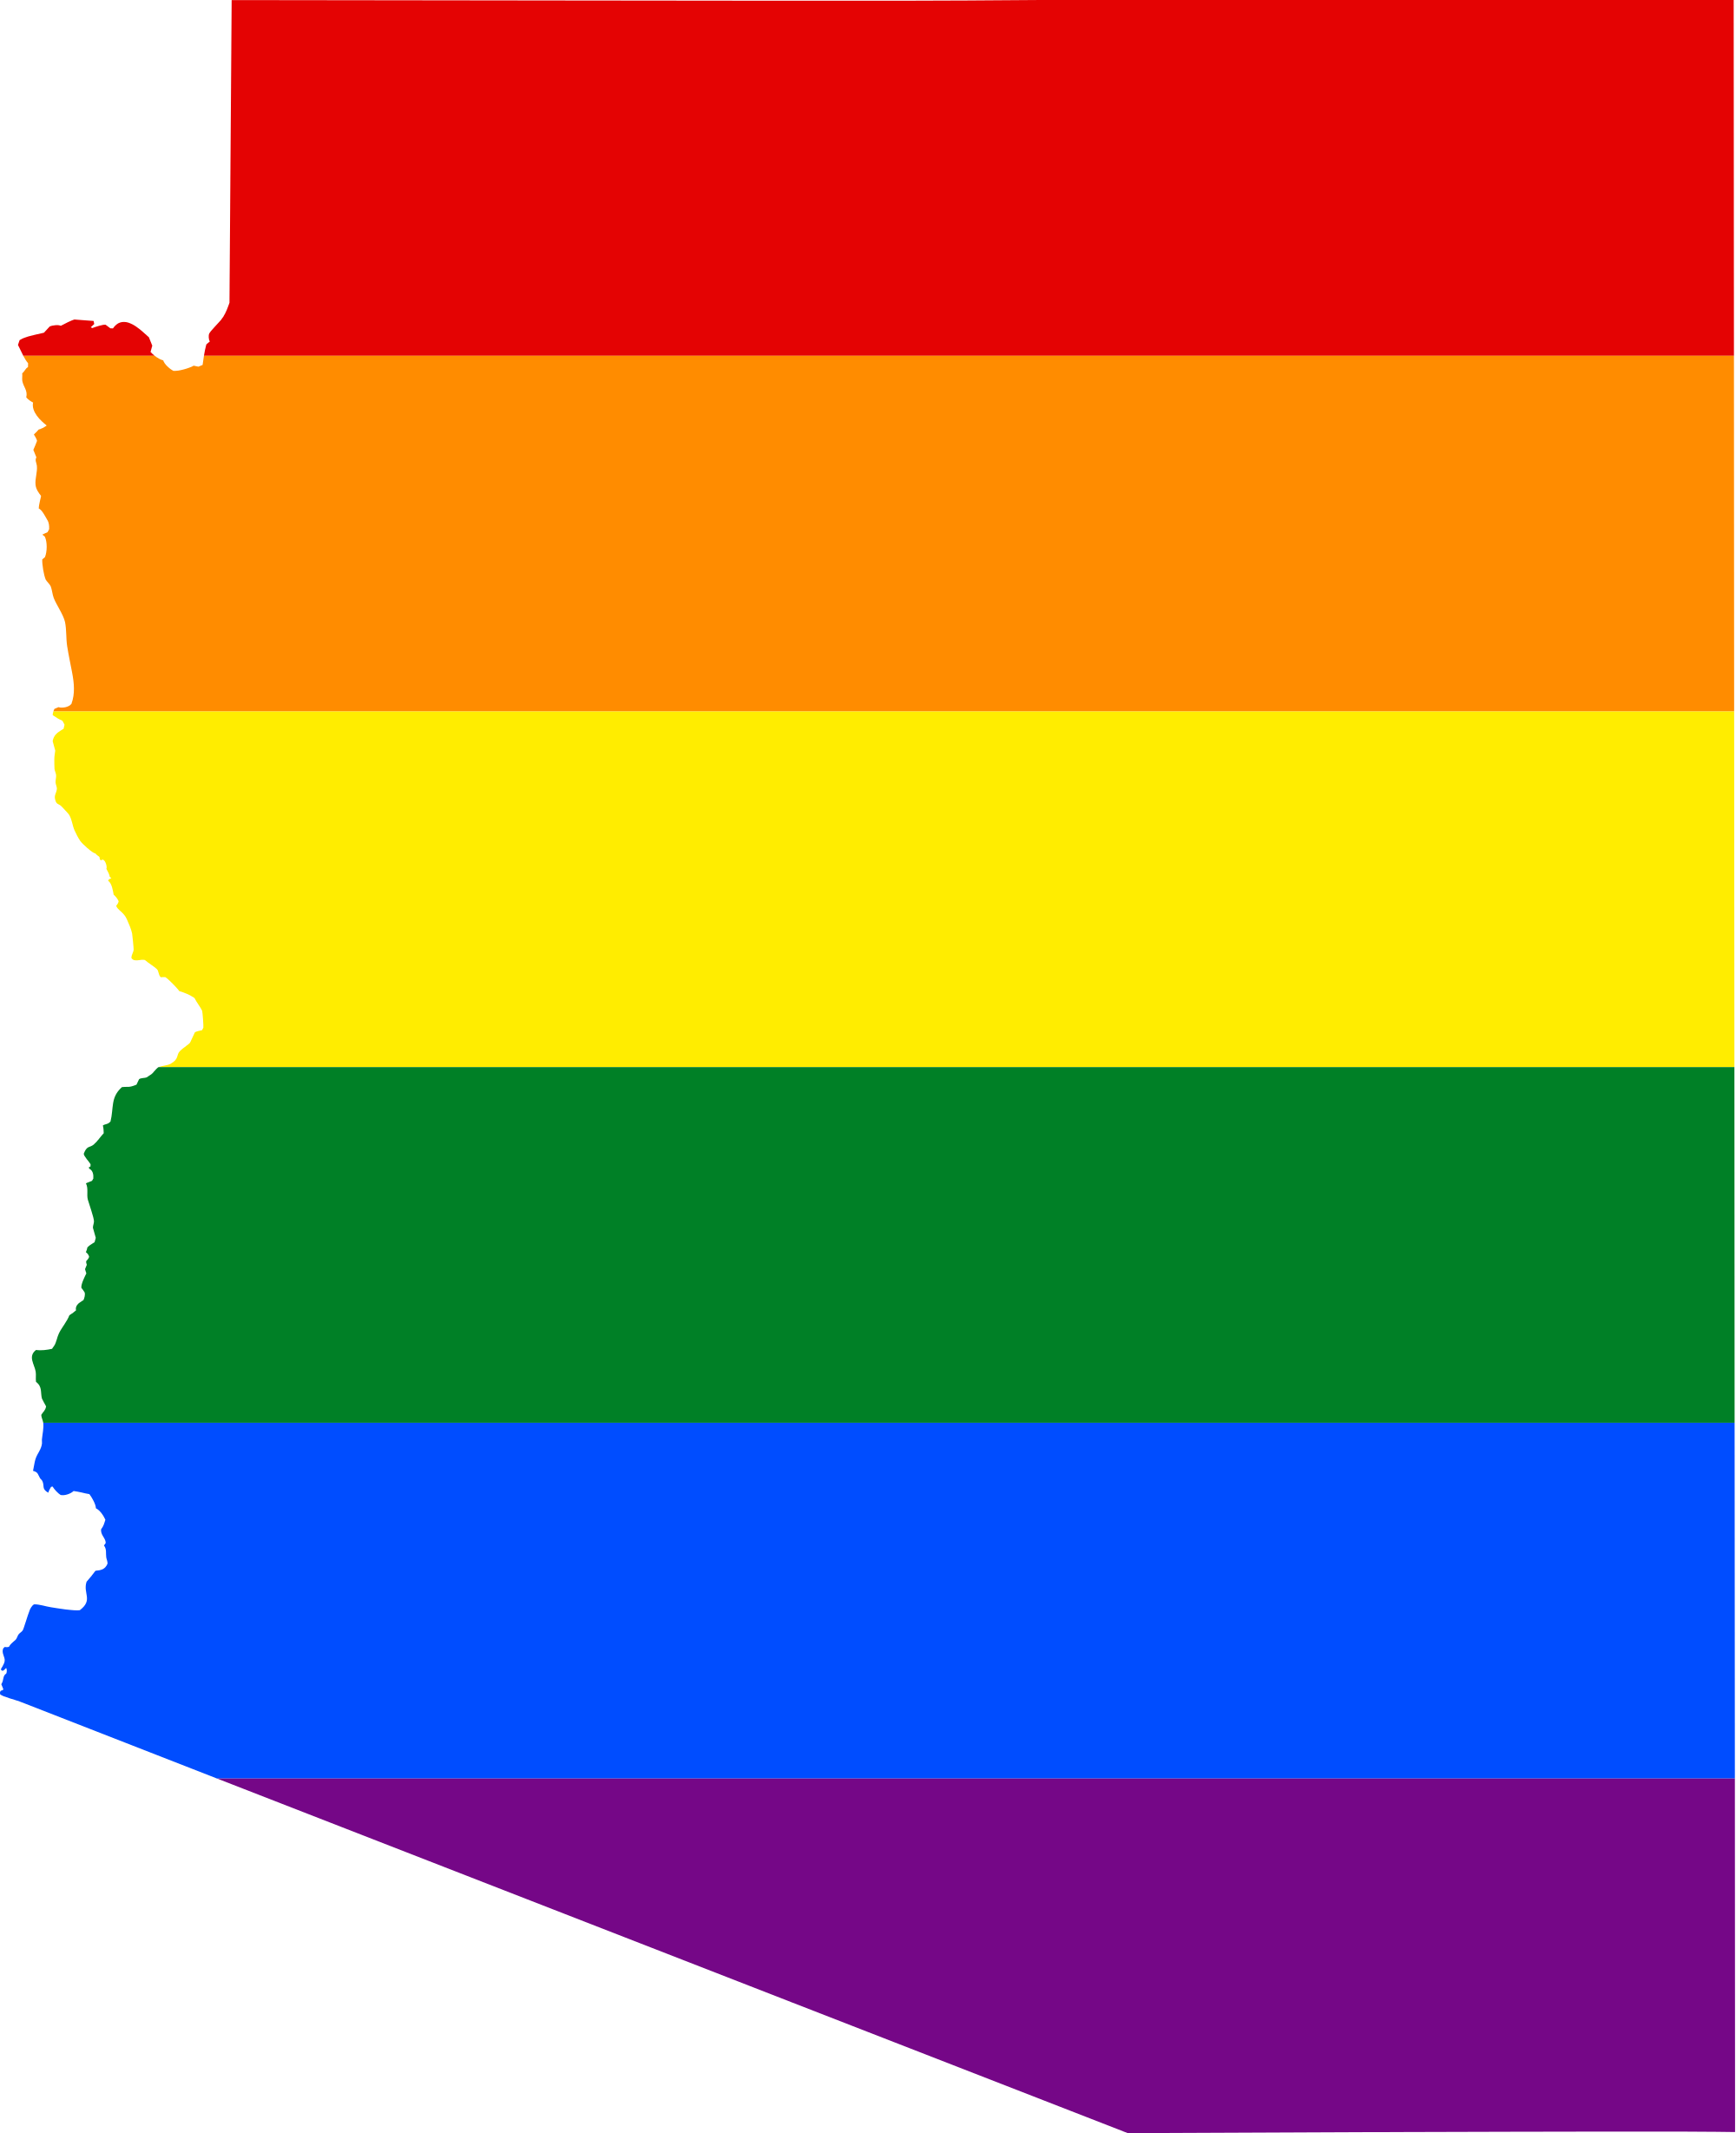 Pride flags. Флаги прайдов ЛГБТ. Империя инков флаг и ЛГБТ. Флаг ЛГБТ вектор. ЛГБТ флаг 1978.